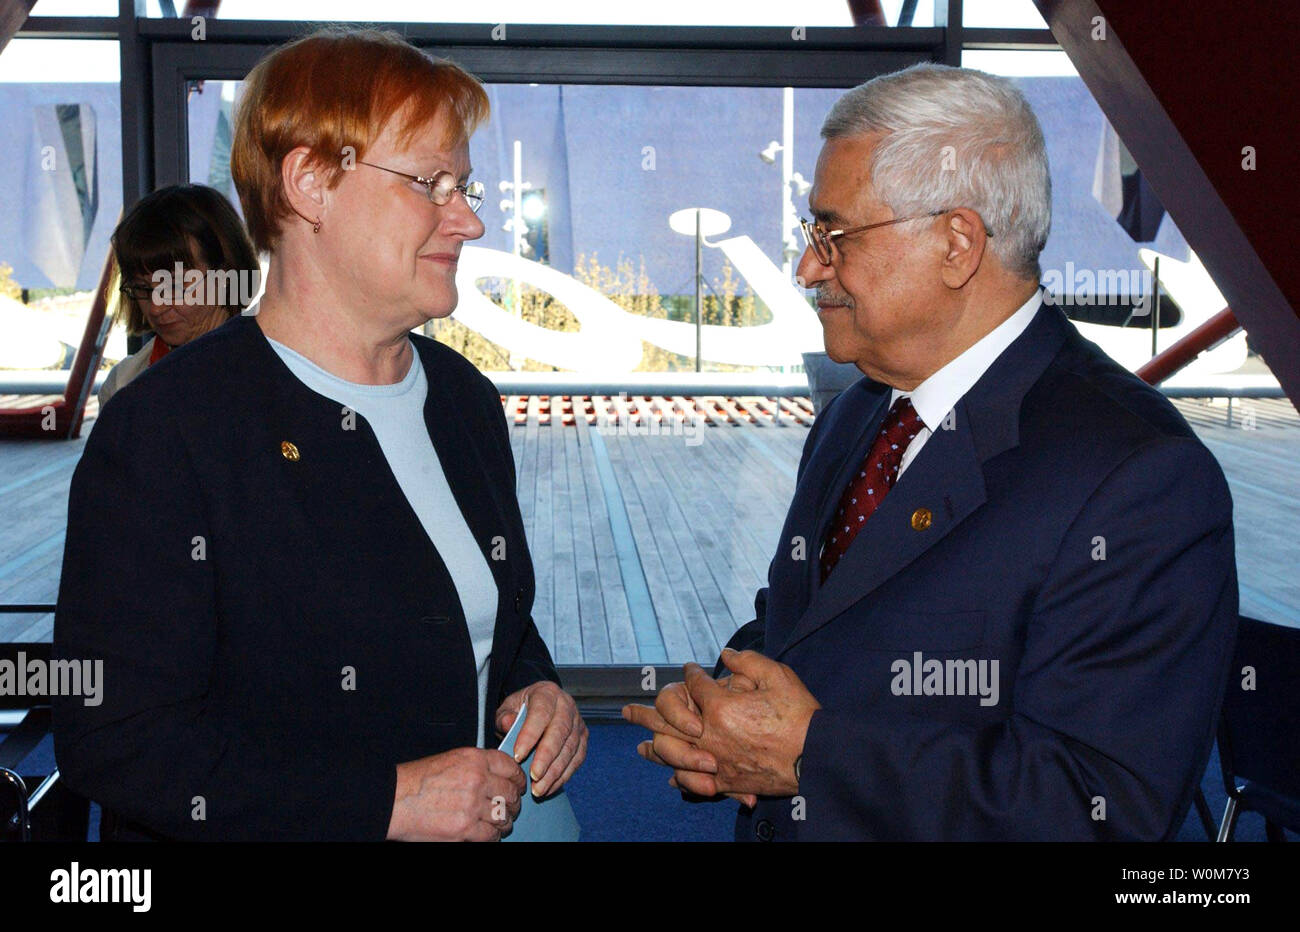 Le président palestinien Mahmoud Abbas (R) rencontre avec la Finlande Président Tarja Halonen à sommet EuroMed à Barcelone, Espagne le 11 novembre 2005. Le sommet vise à améliorer les relations entre l'UE et ses voisins méditerranéens. (Photo d'UPI/Omar Rashidi/PPO) Banque D'Images